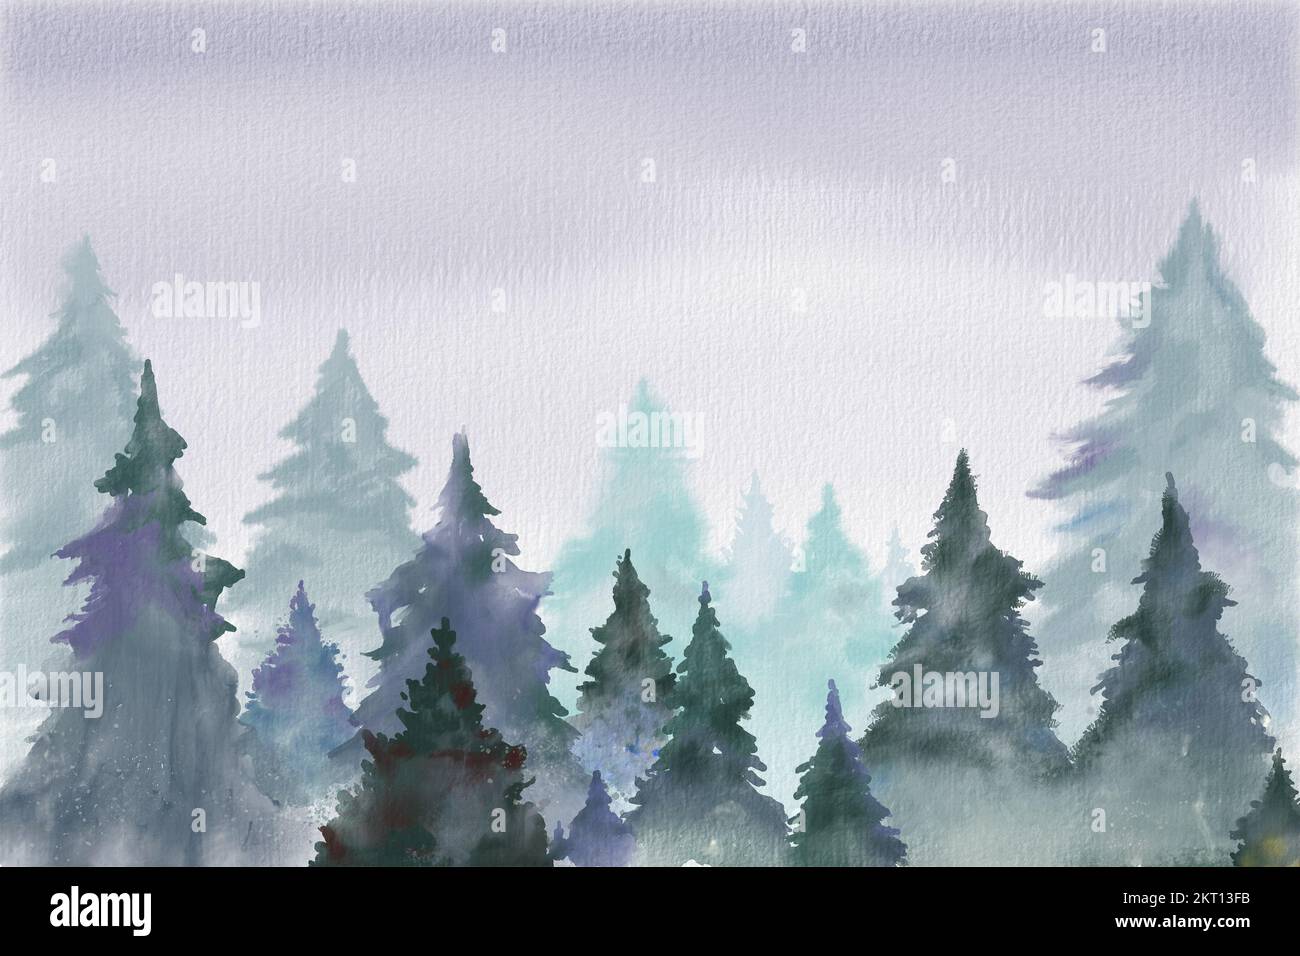 Arrière-plan de Noël avec quelques arbres dans un environnement brumeux et enneigé. Aquarelle numérique. Banque D'Images